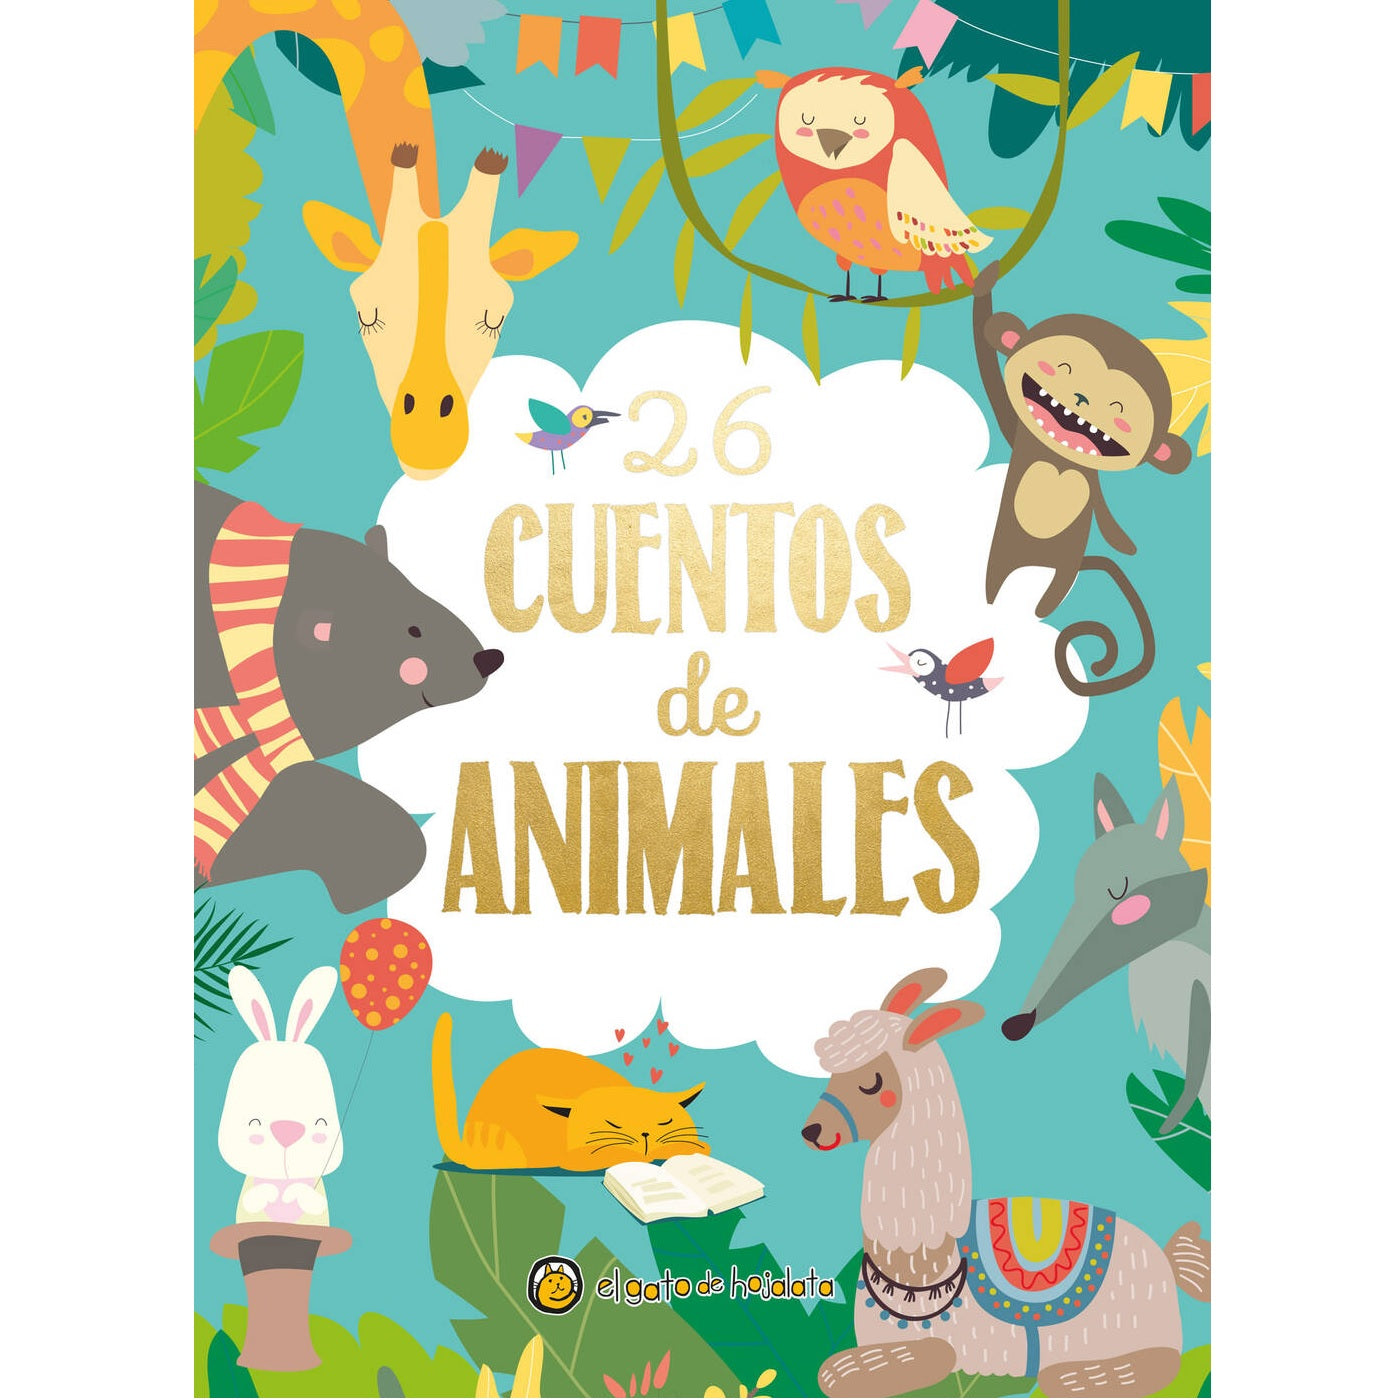 26 cuentos de Animales